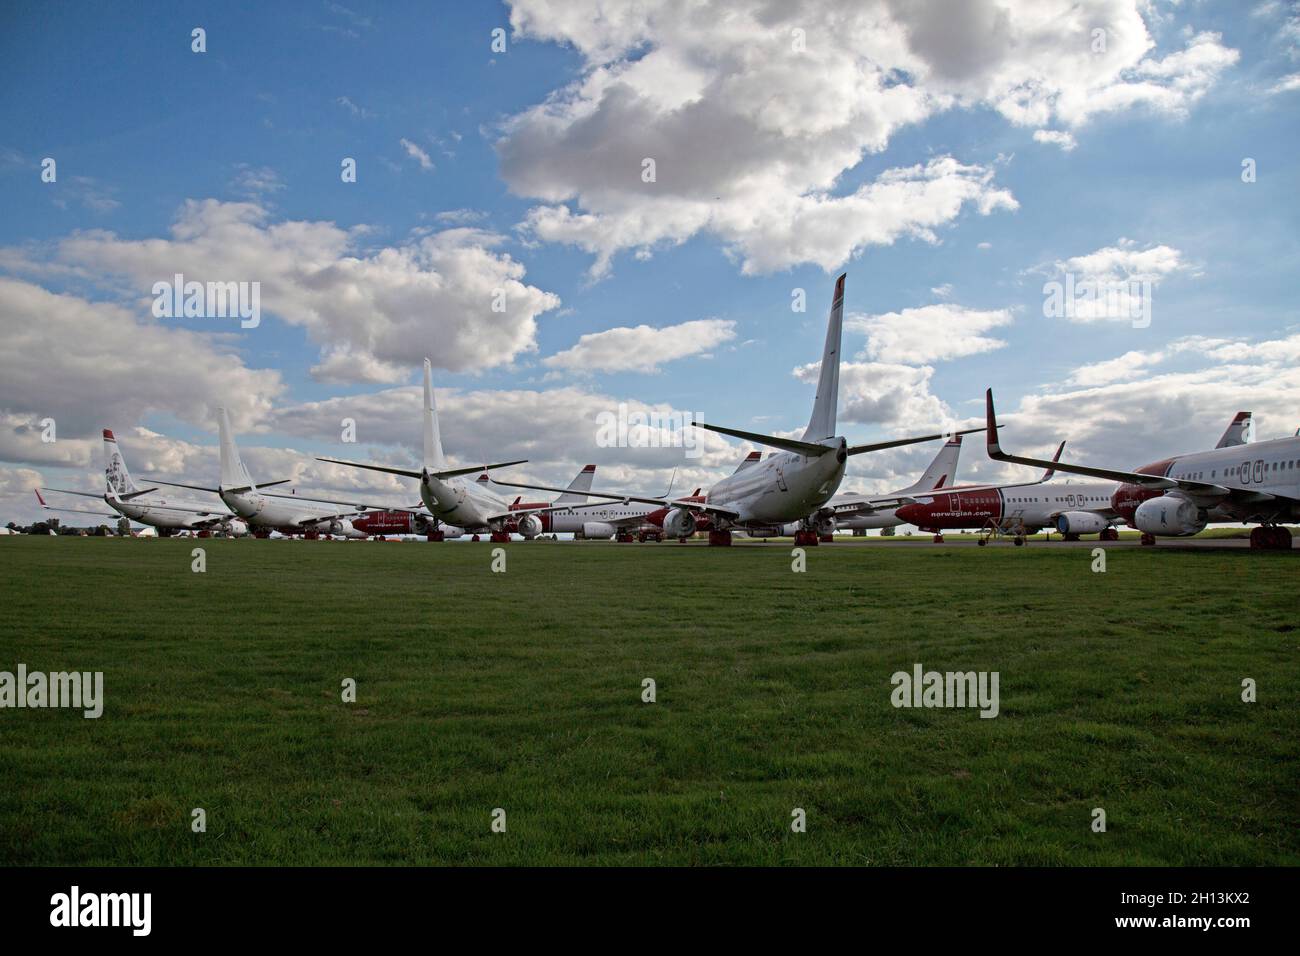 Une rangée de Boeing 737 en stock à l'aéroport de Cotswold, en Angleterre.Ceux-ci ont été stockés en raison du manque d'affaires en raison de l'épidémie de COVID. Banque D'Images